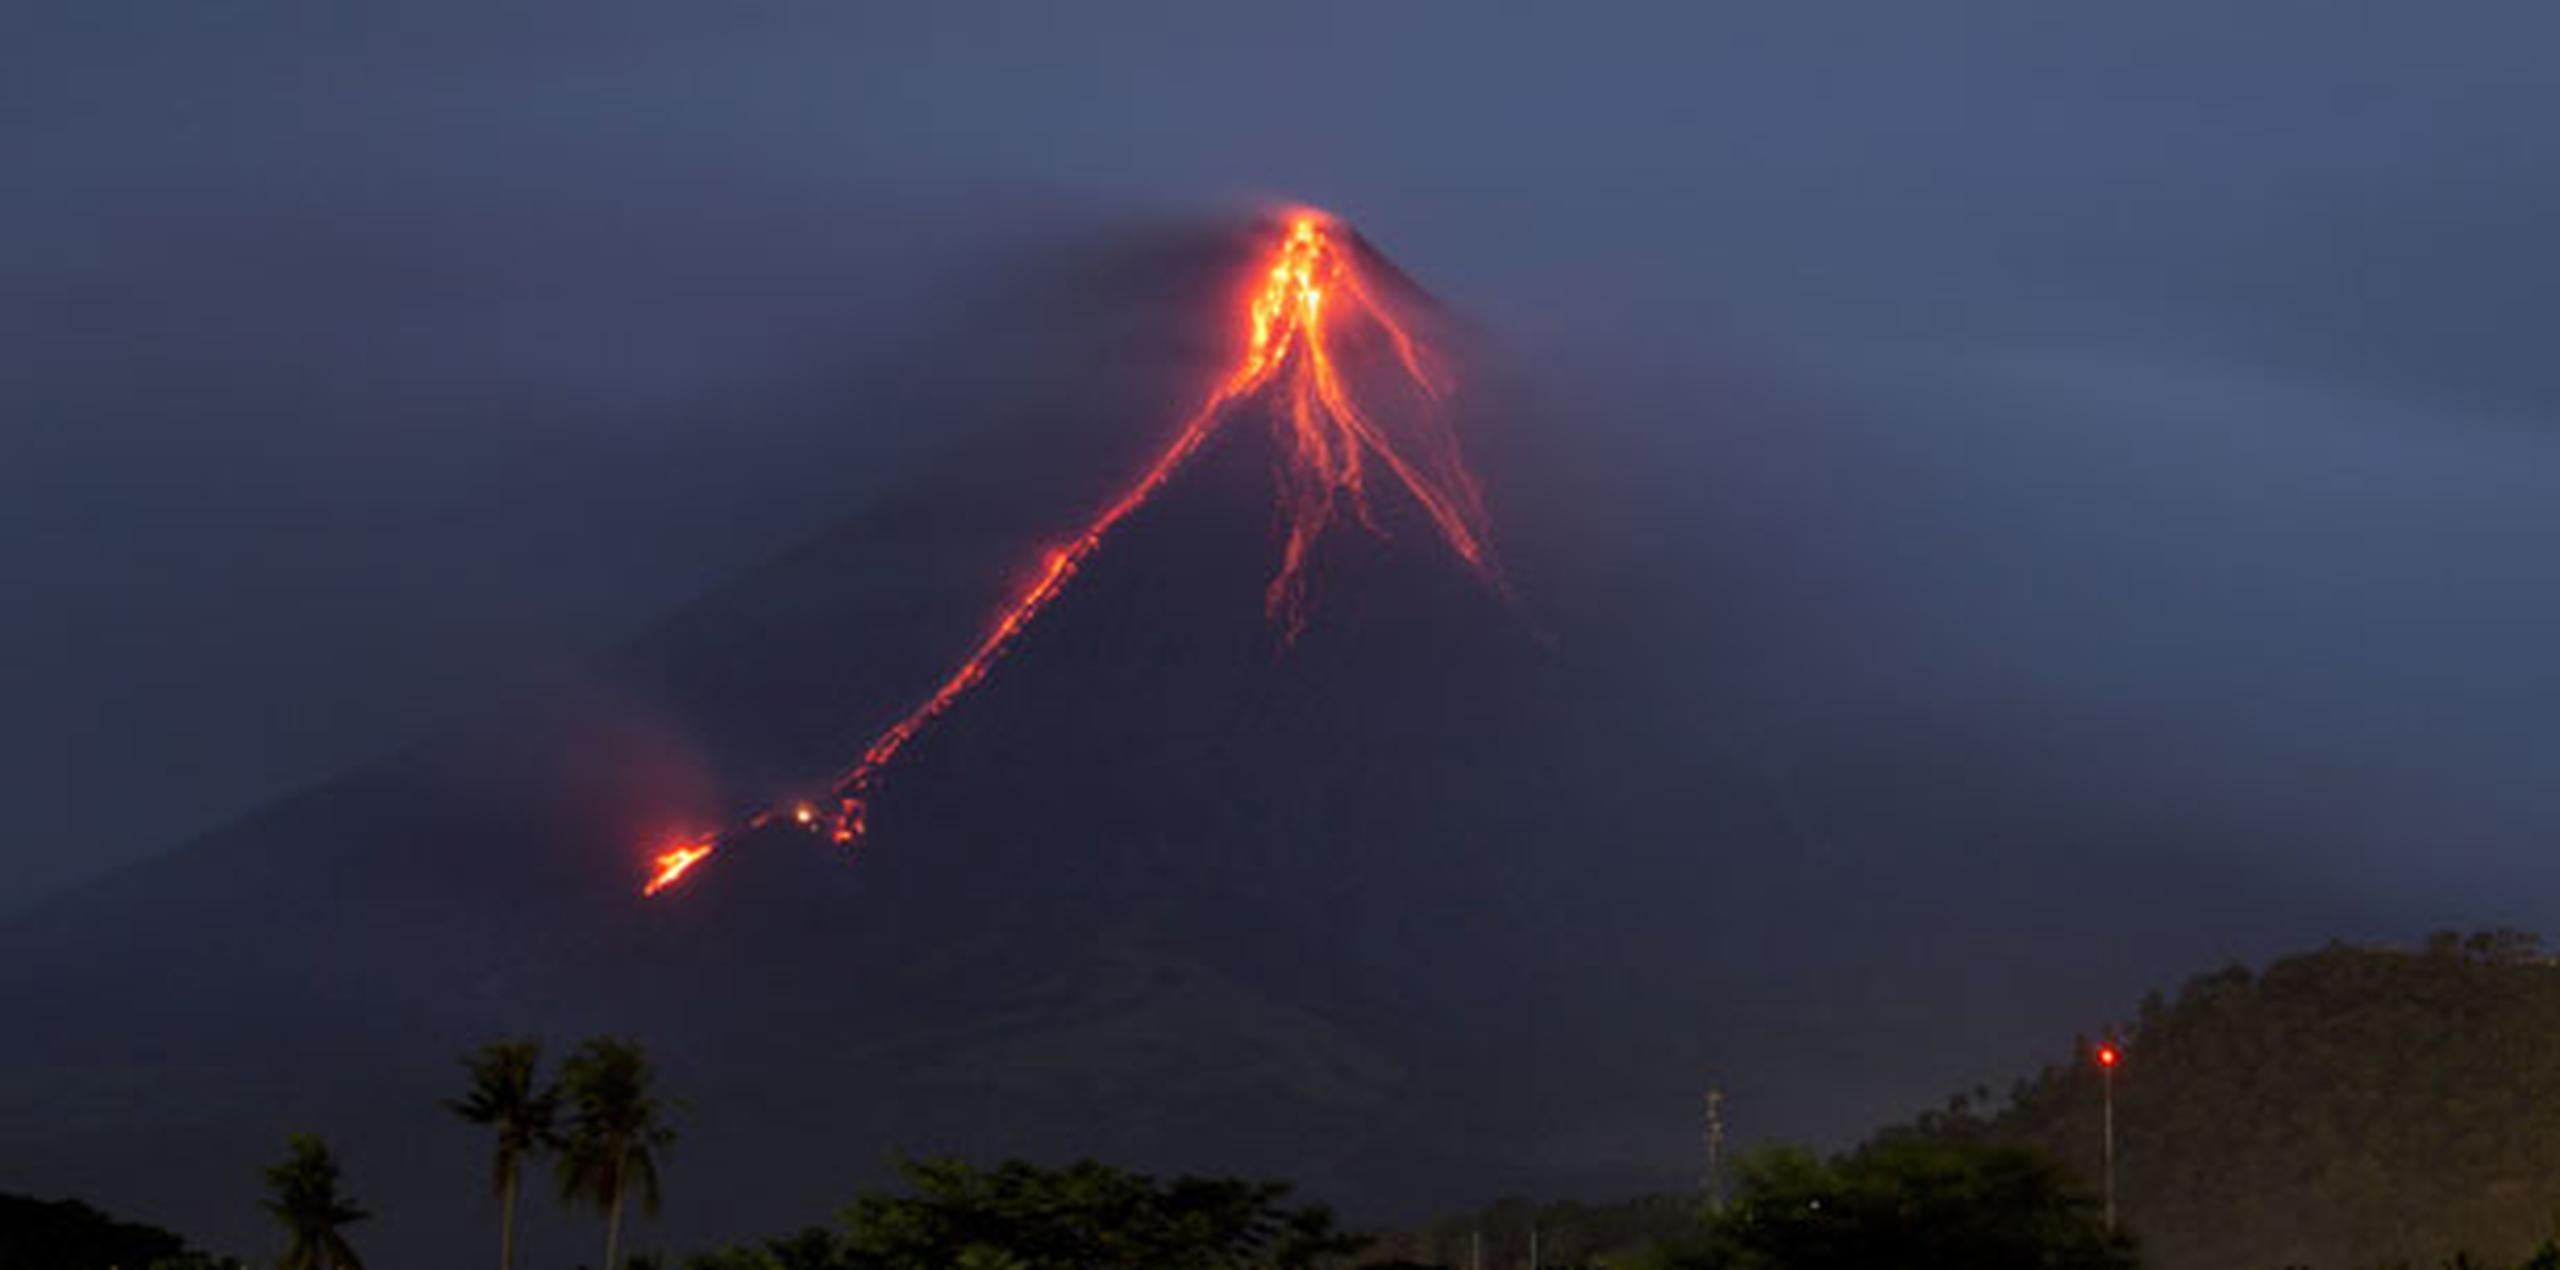 Expertos advirtieron la semana pasada que la actividad sísmica bajo el volcán significa que una erupción grande pudiera ser inminente. (AP)